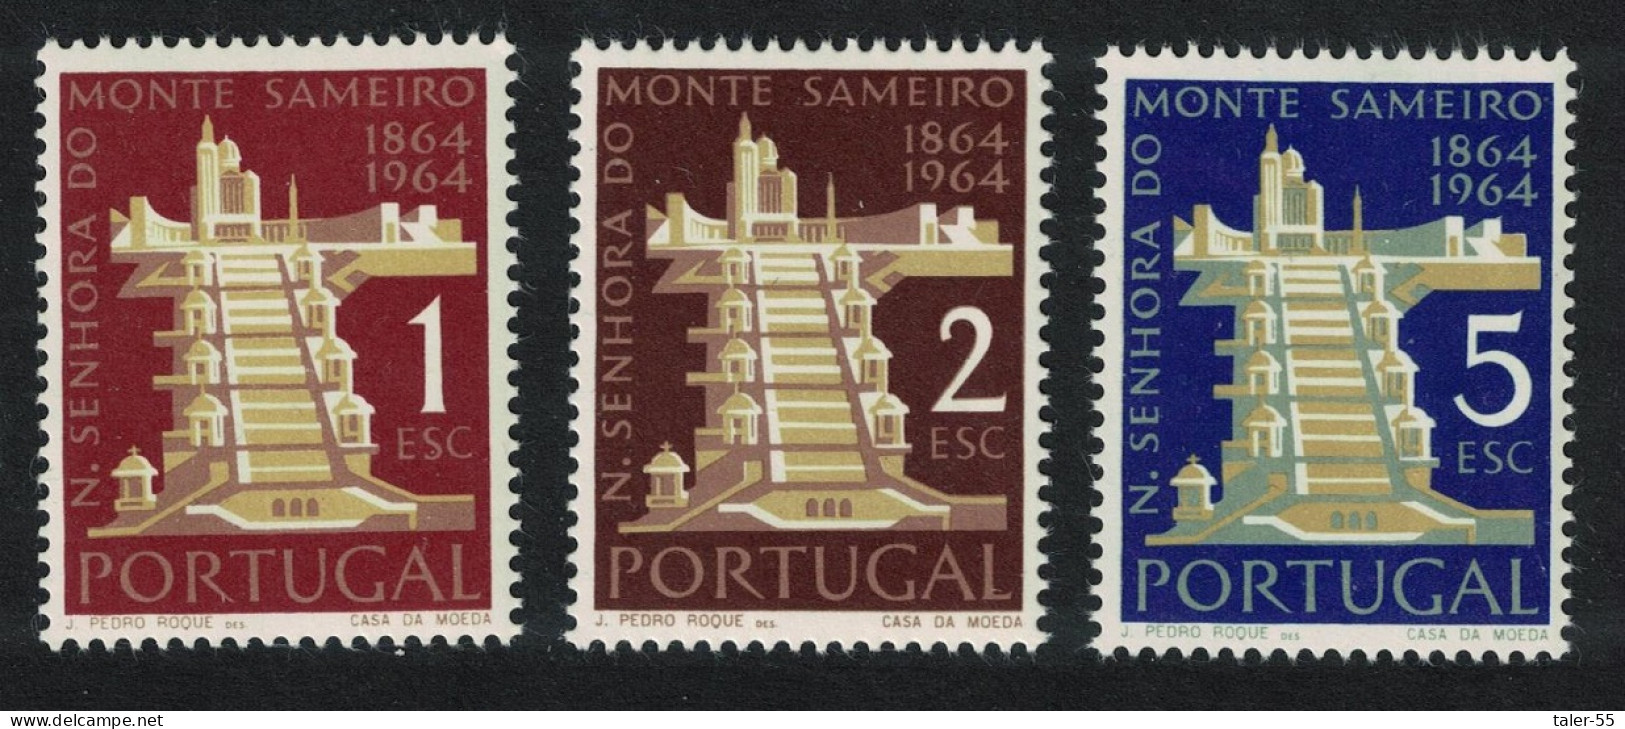 Portugal Sameiro Shrine 3v 1964 MNH SG#1246-1248 - Nuovi